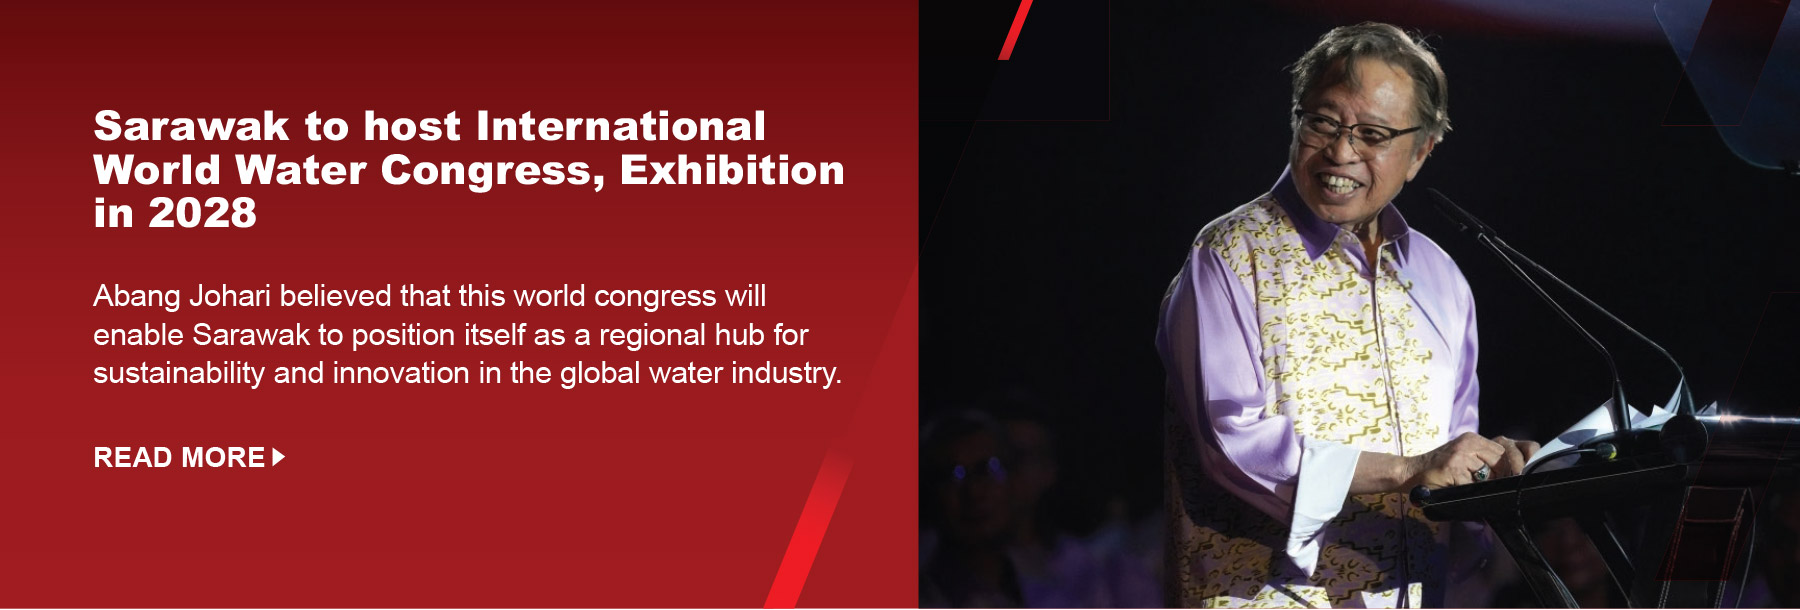 Sarawak to host International World Water Congress, Exhibition in 2028